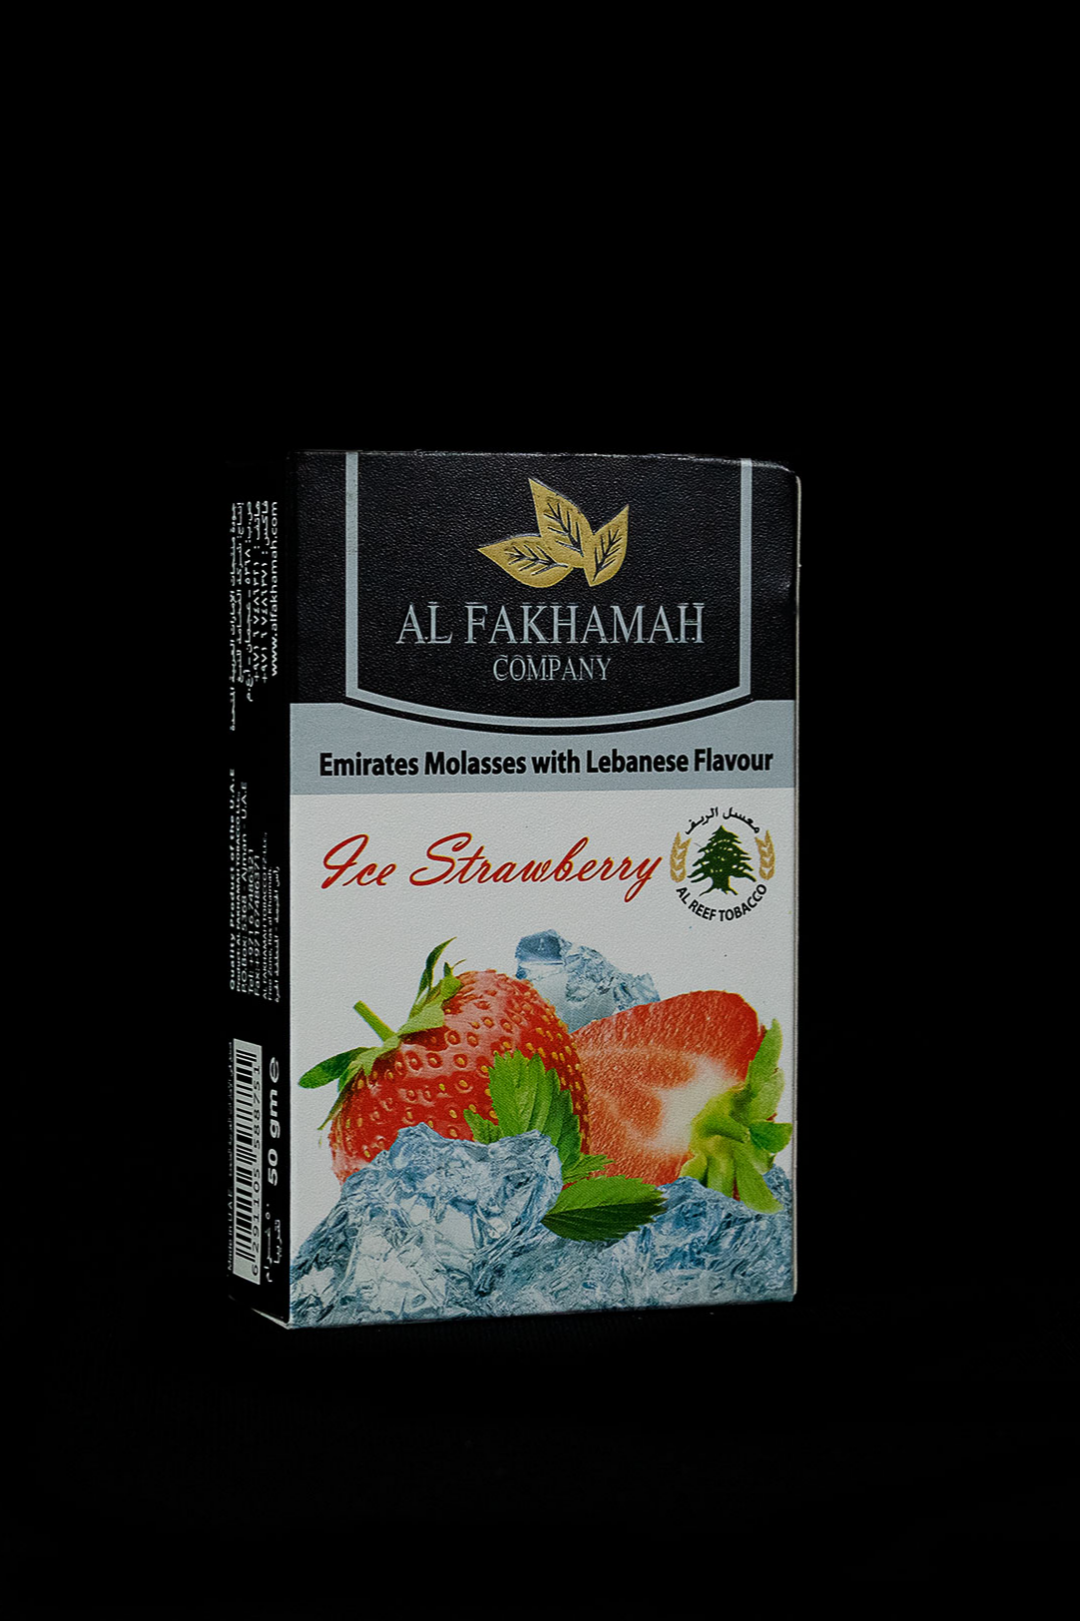 Al Fakhamah ICE STRAWBERRY